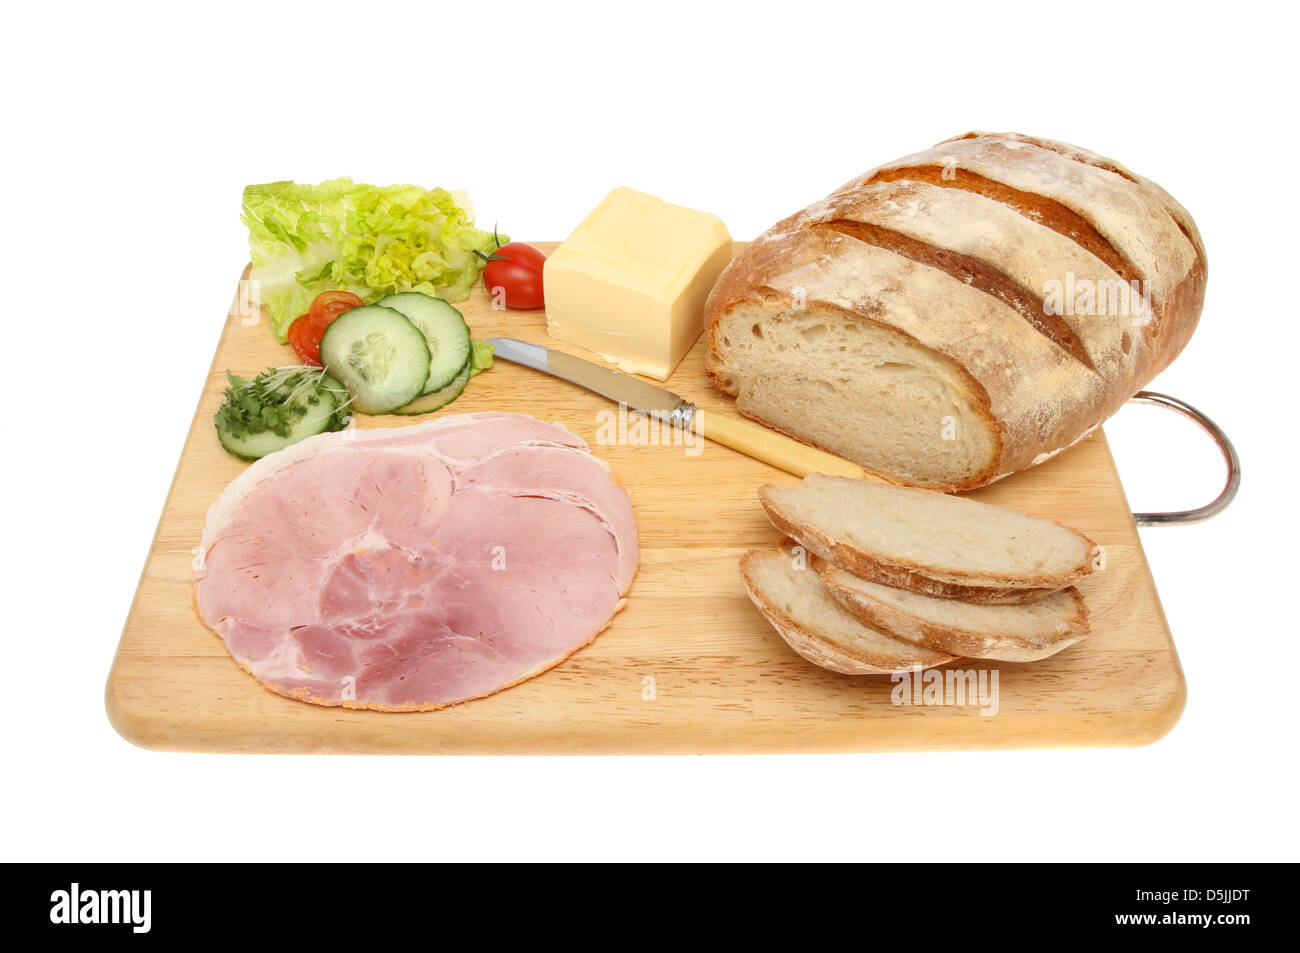 Pain rustique et de sandwich ingrédients sur une planche en bois isolés contre white Banque D'Images